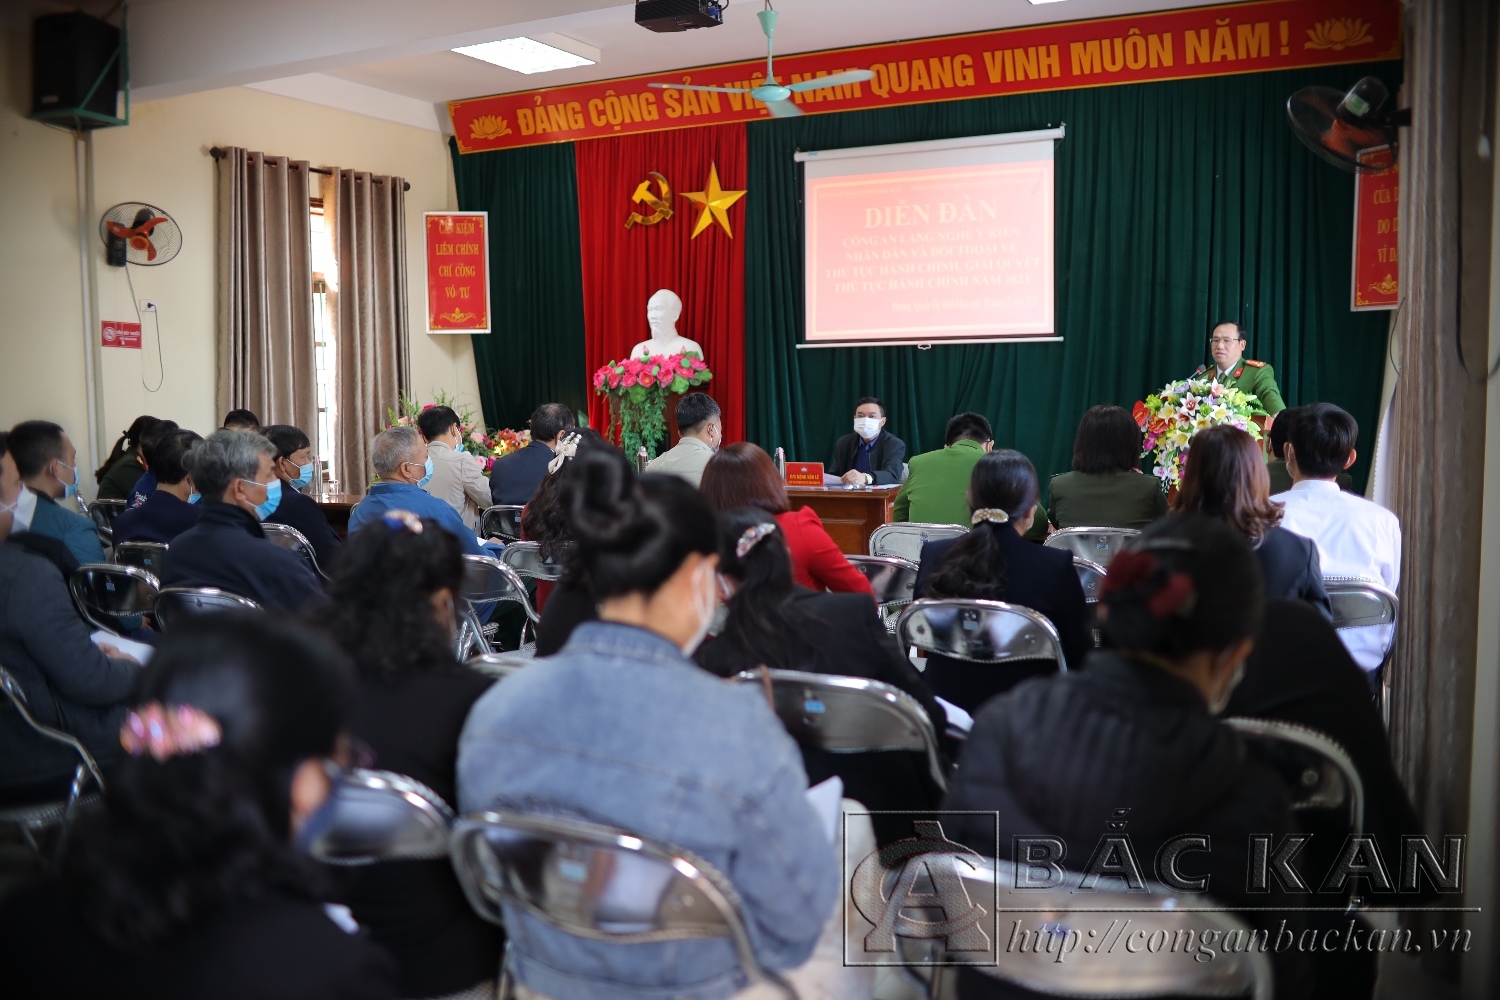 Diễn đàn Công an lắng nghe ý kiến Nhân dân tại phường Nguyễn Thị Minh Khai, Thành phố Bắc Kạn.